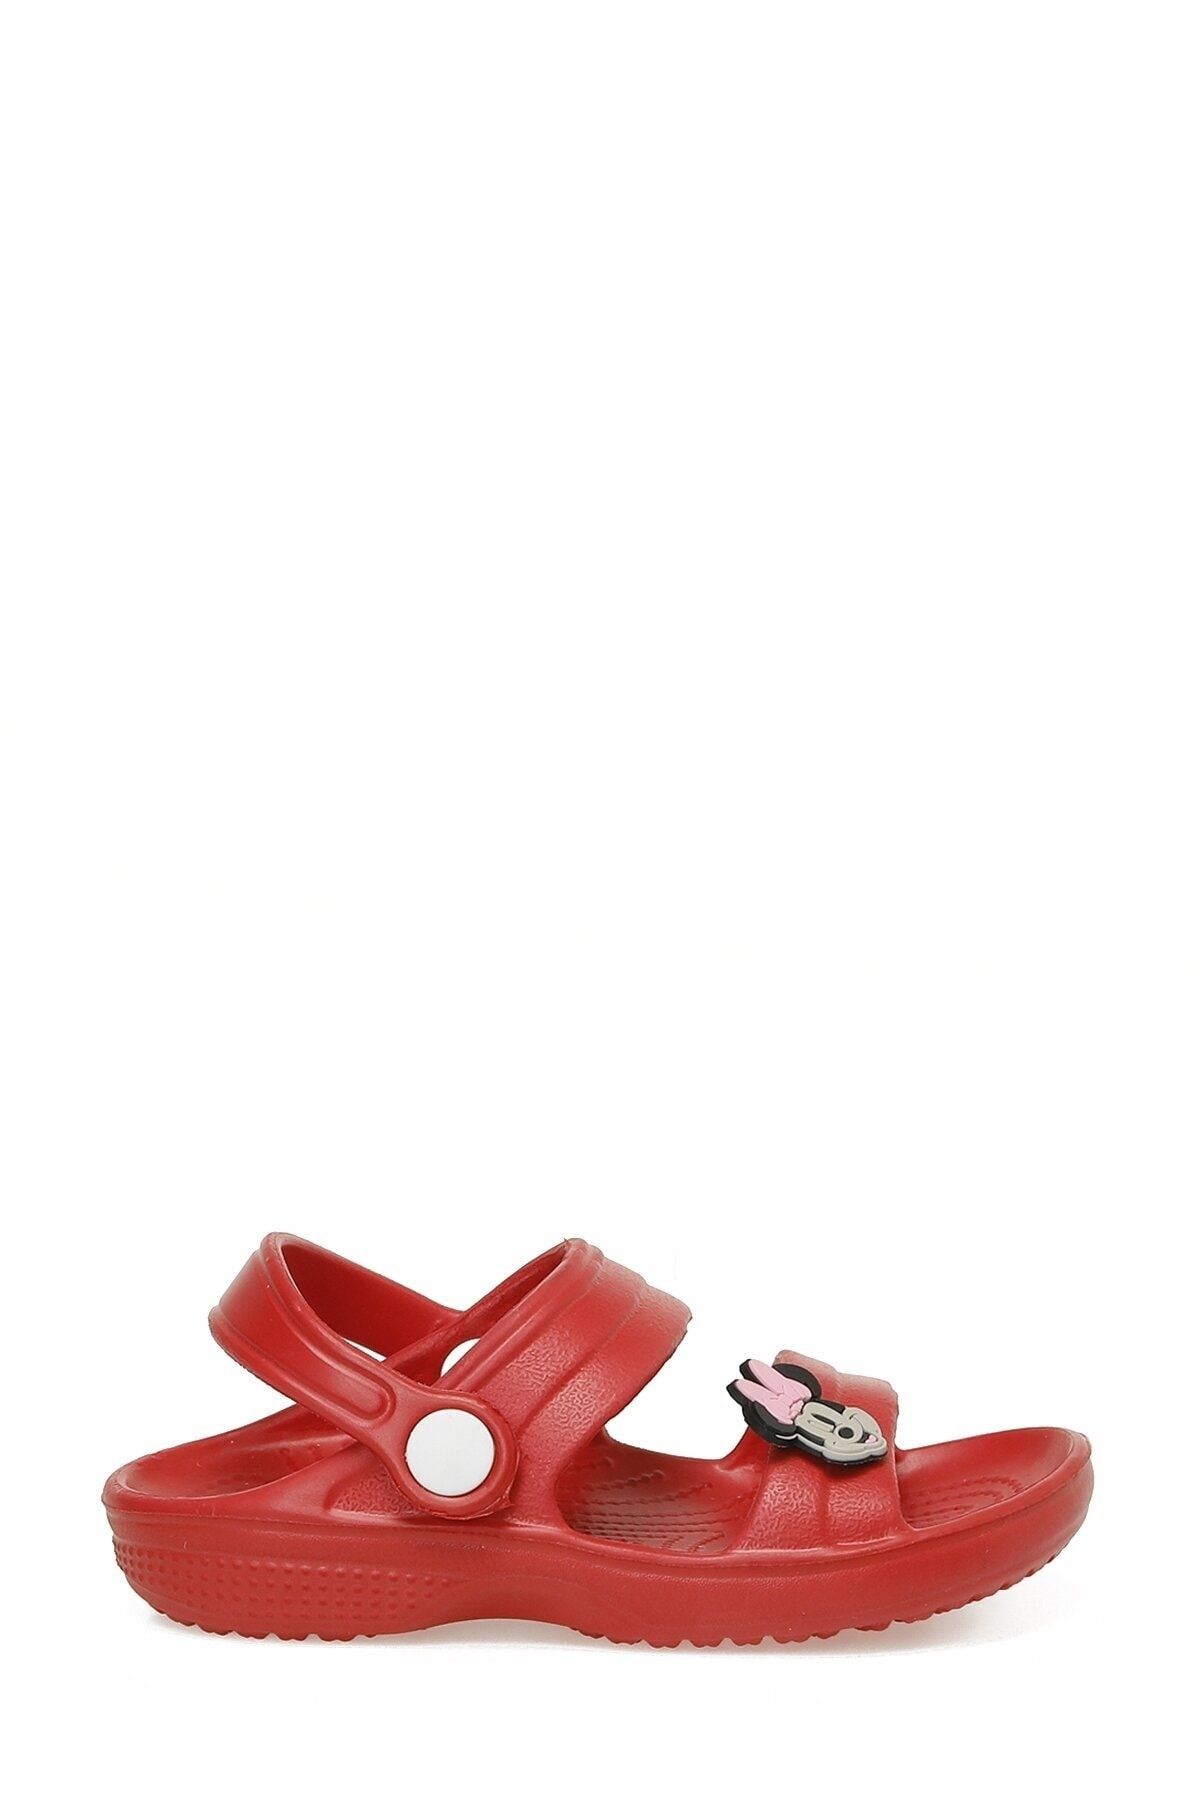 Mickey Mouse Nokı.b3fx Kırmızı Kız Çocuk Deniz Ayakkabısı